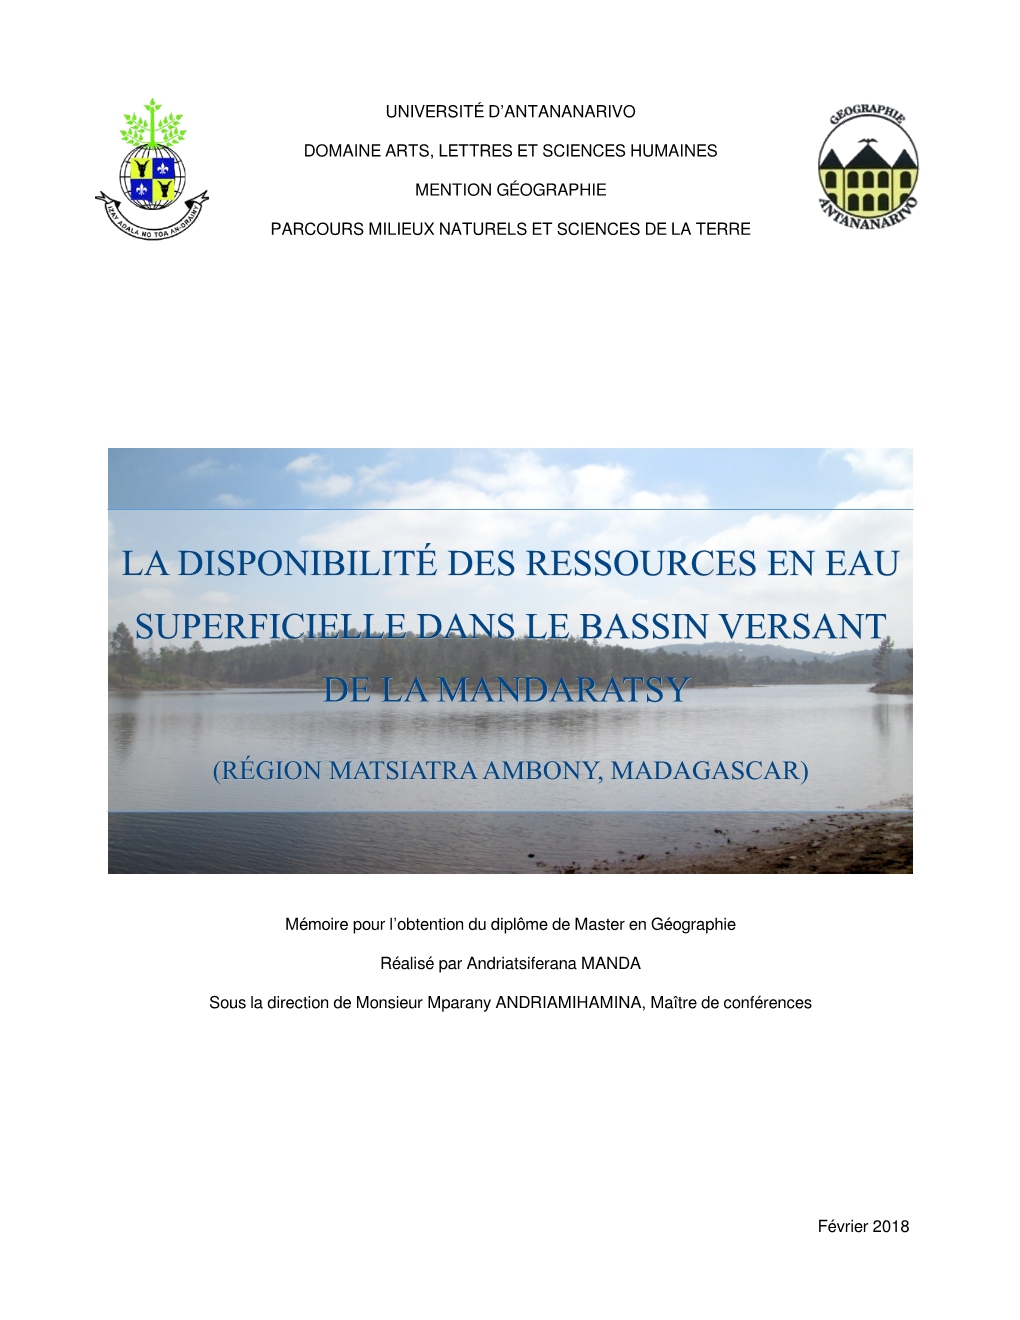 La Disponibilité Des Ressources En Eau Superficielle Dans Le Bassin Versant De La Mandaratsy